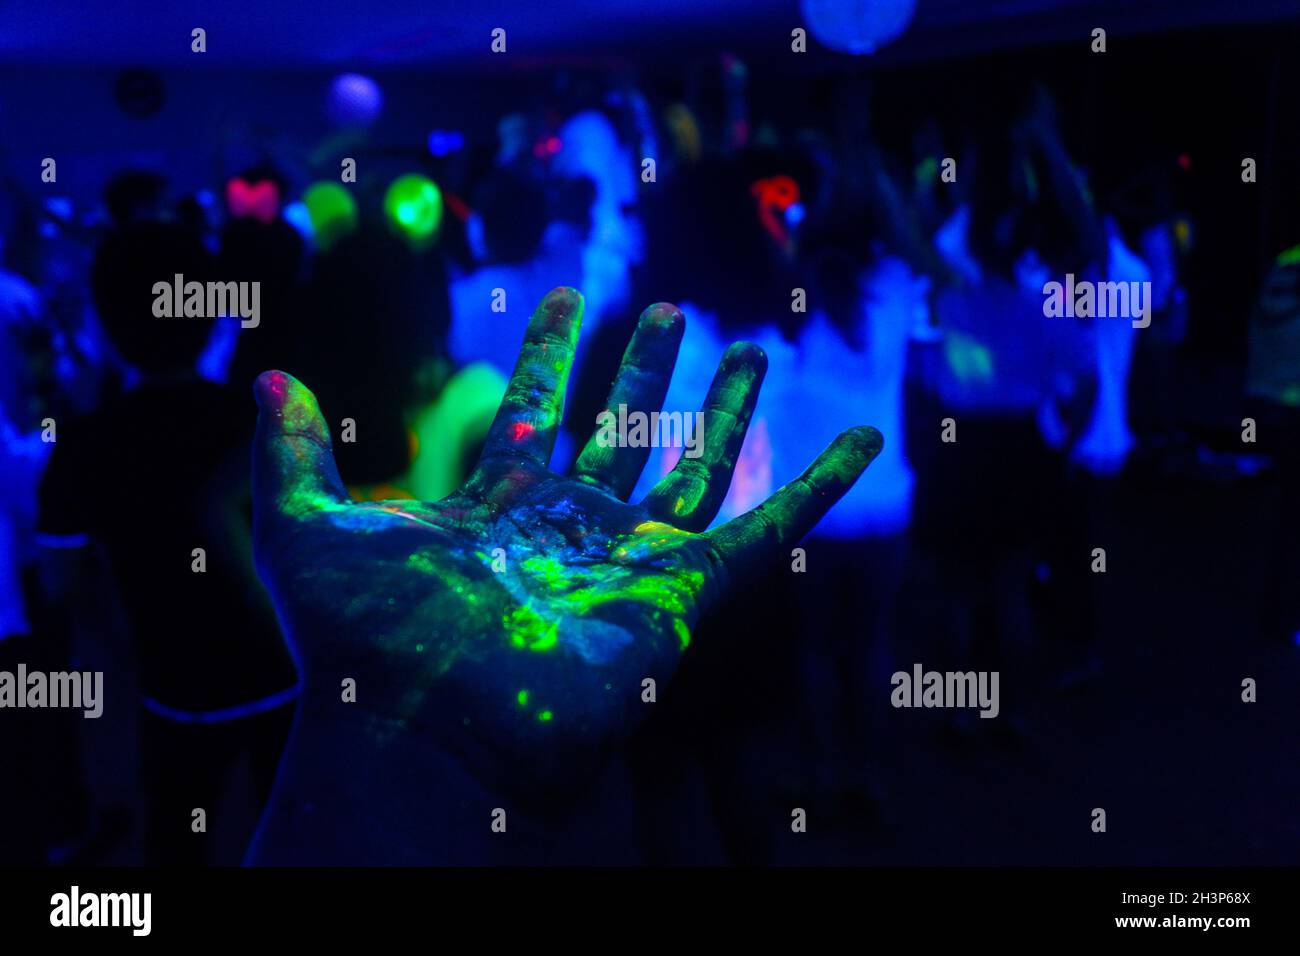 Vernice fluorescente immagini e fotografie stock ad alta risoluzione - Alamy